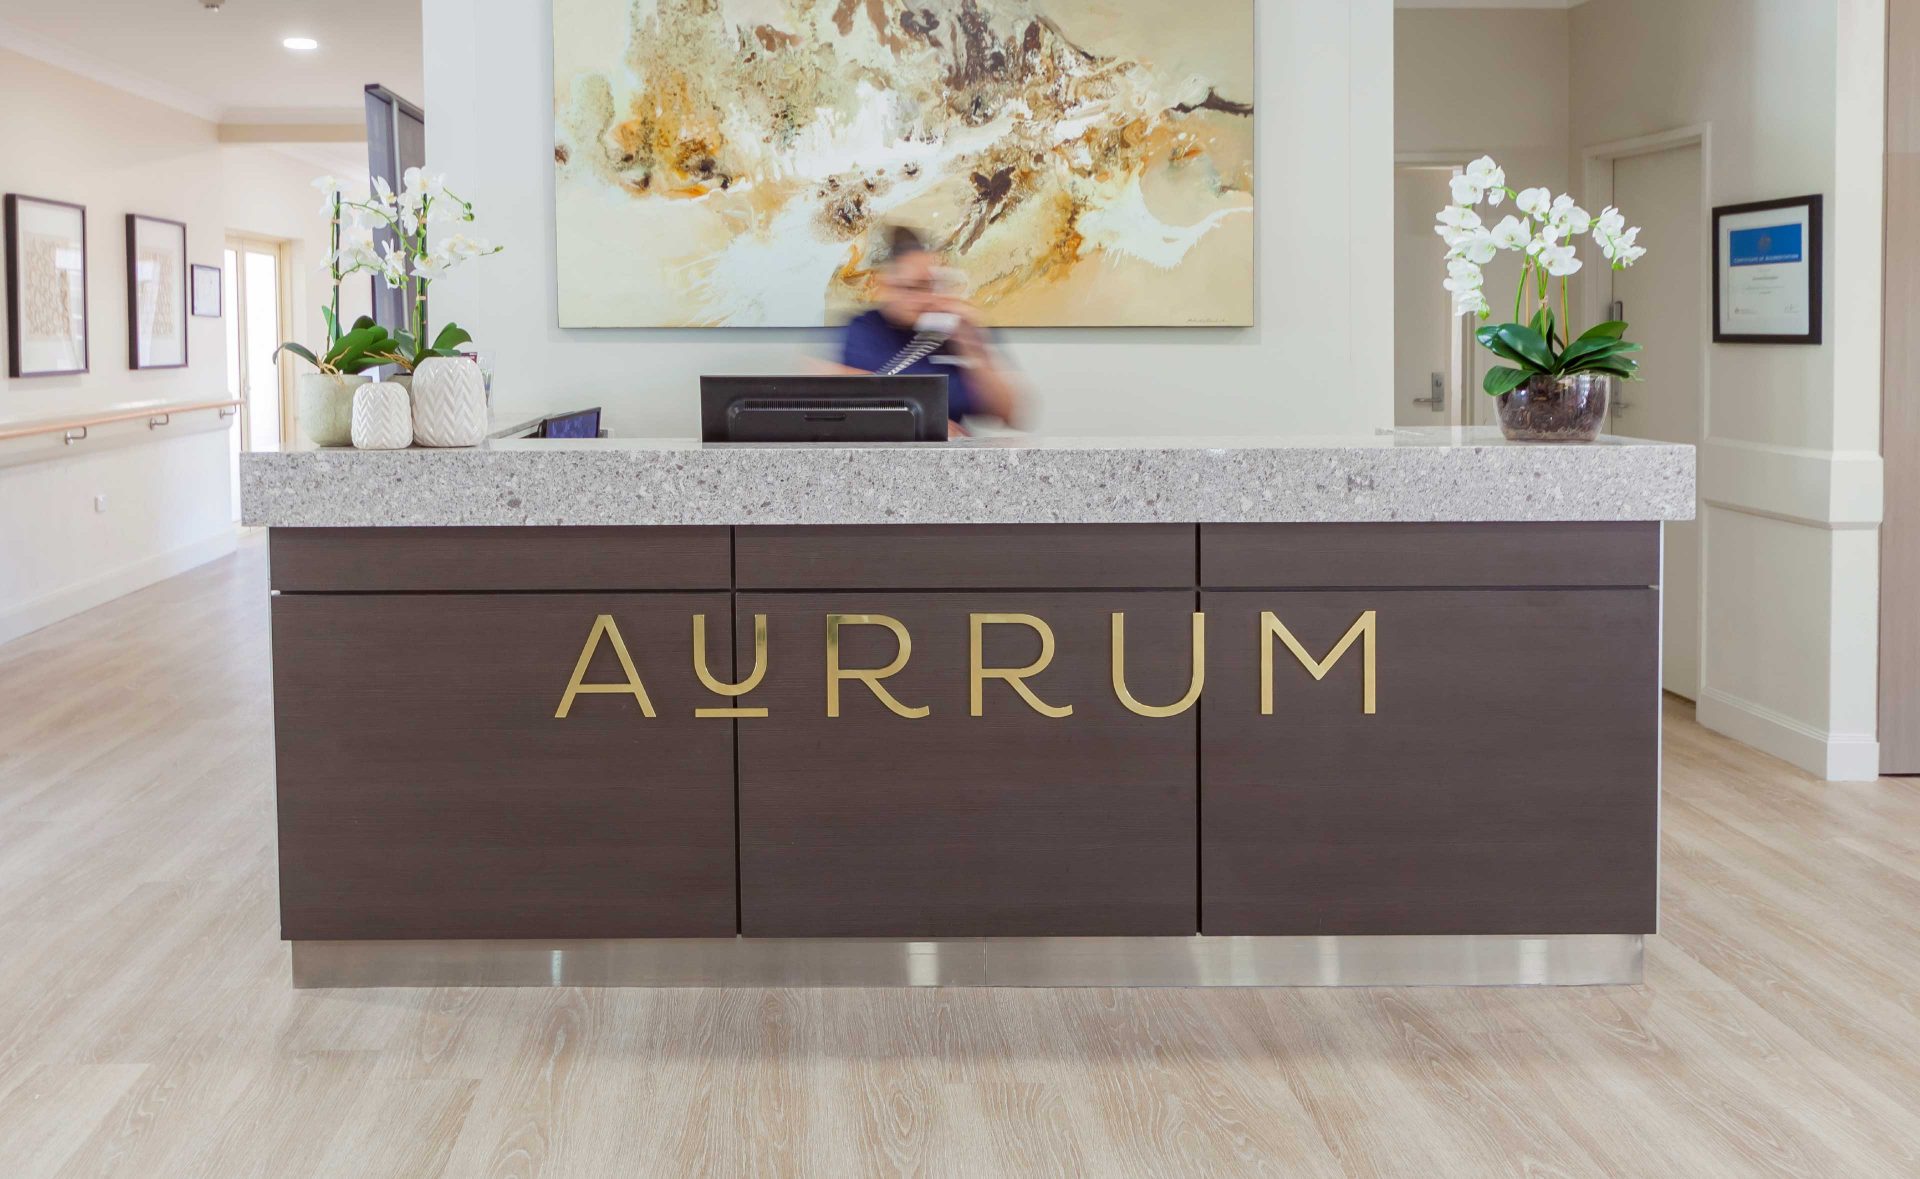 Aurrum Branding and Design